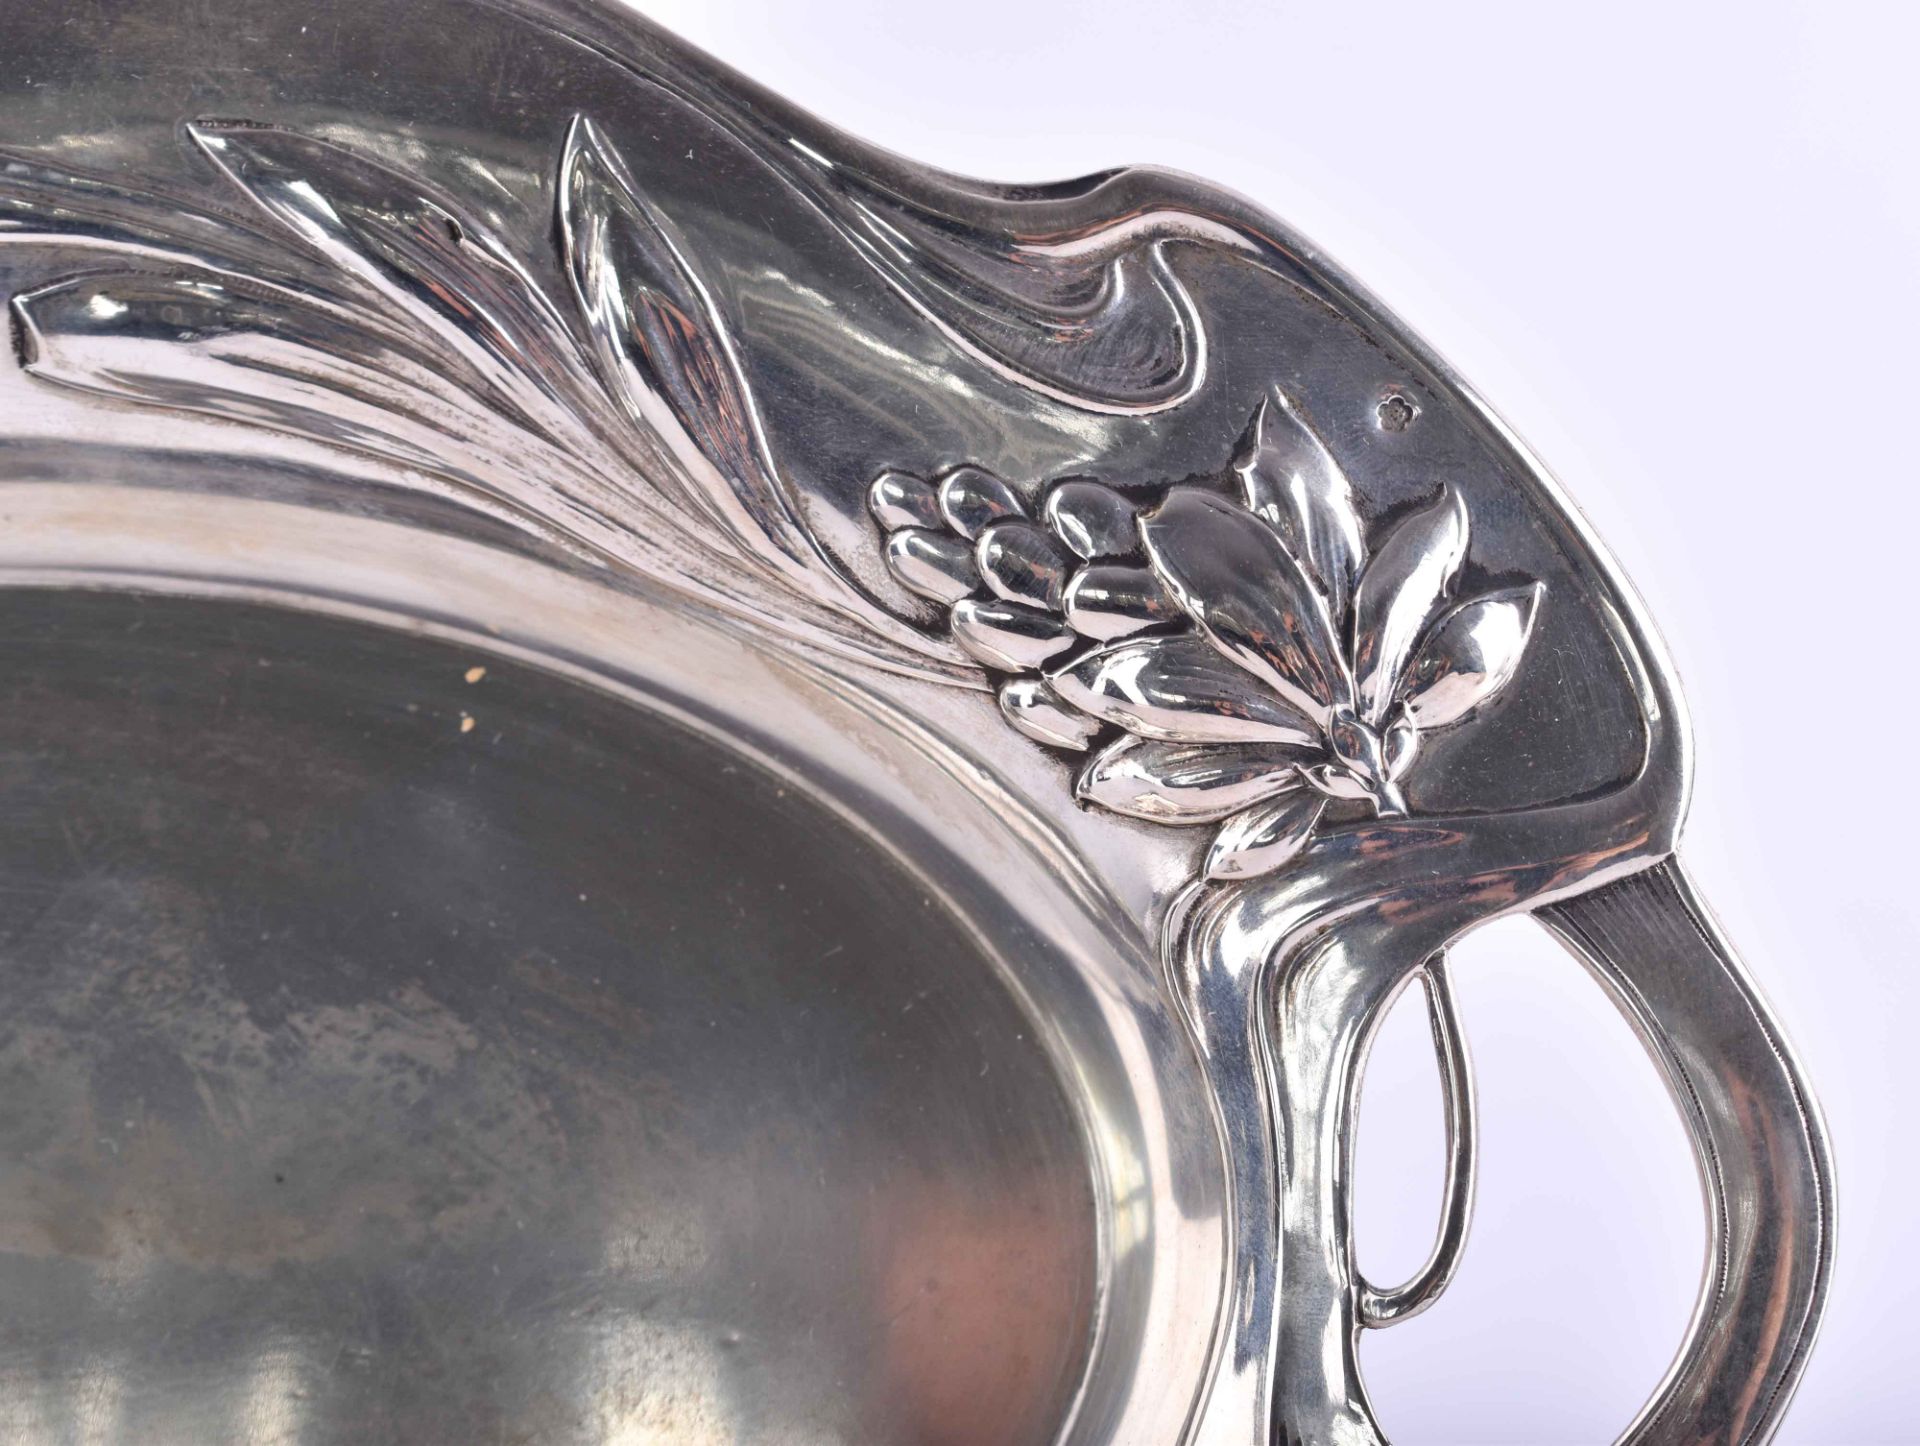  Art Nouveau silver bowl Austria - Image 3 of 6